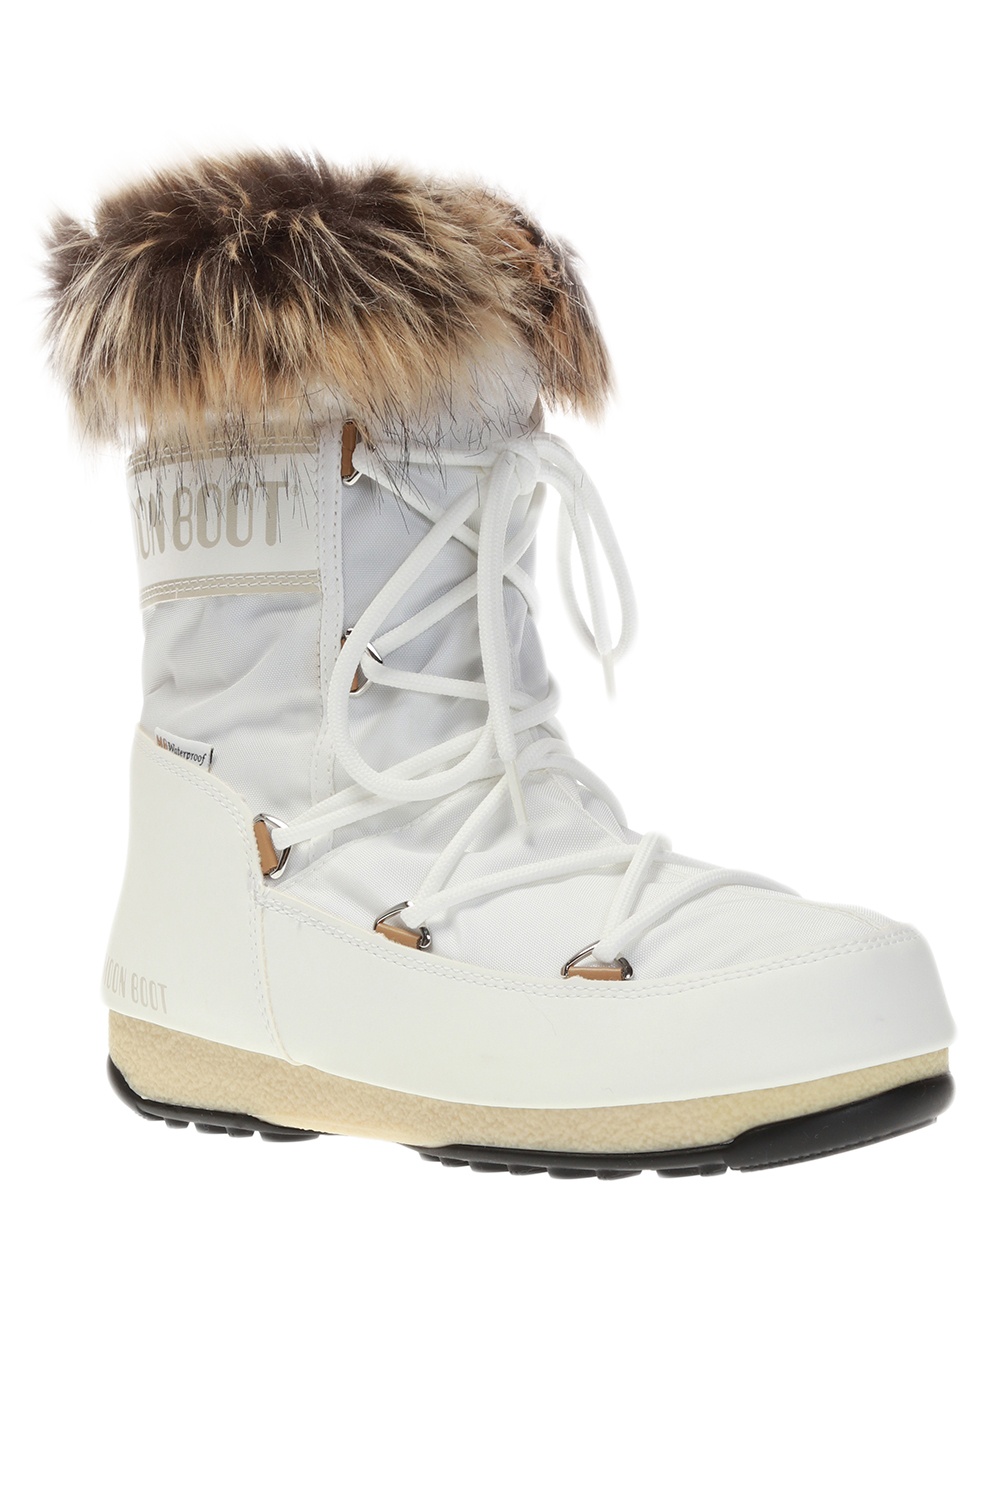 gunstig Observatie Vlekkeloos Geox Children s Shoes Cognac J26CVA - 'Monaco' snow boots Moon Boot -  IetpShops GB